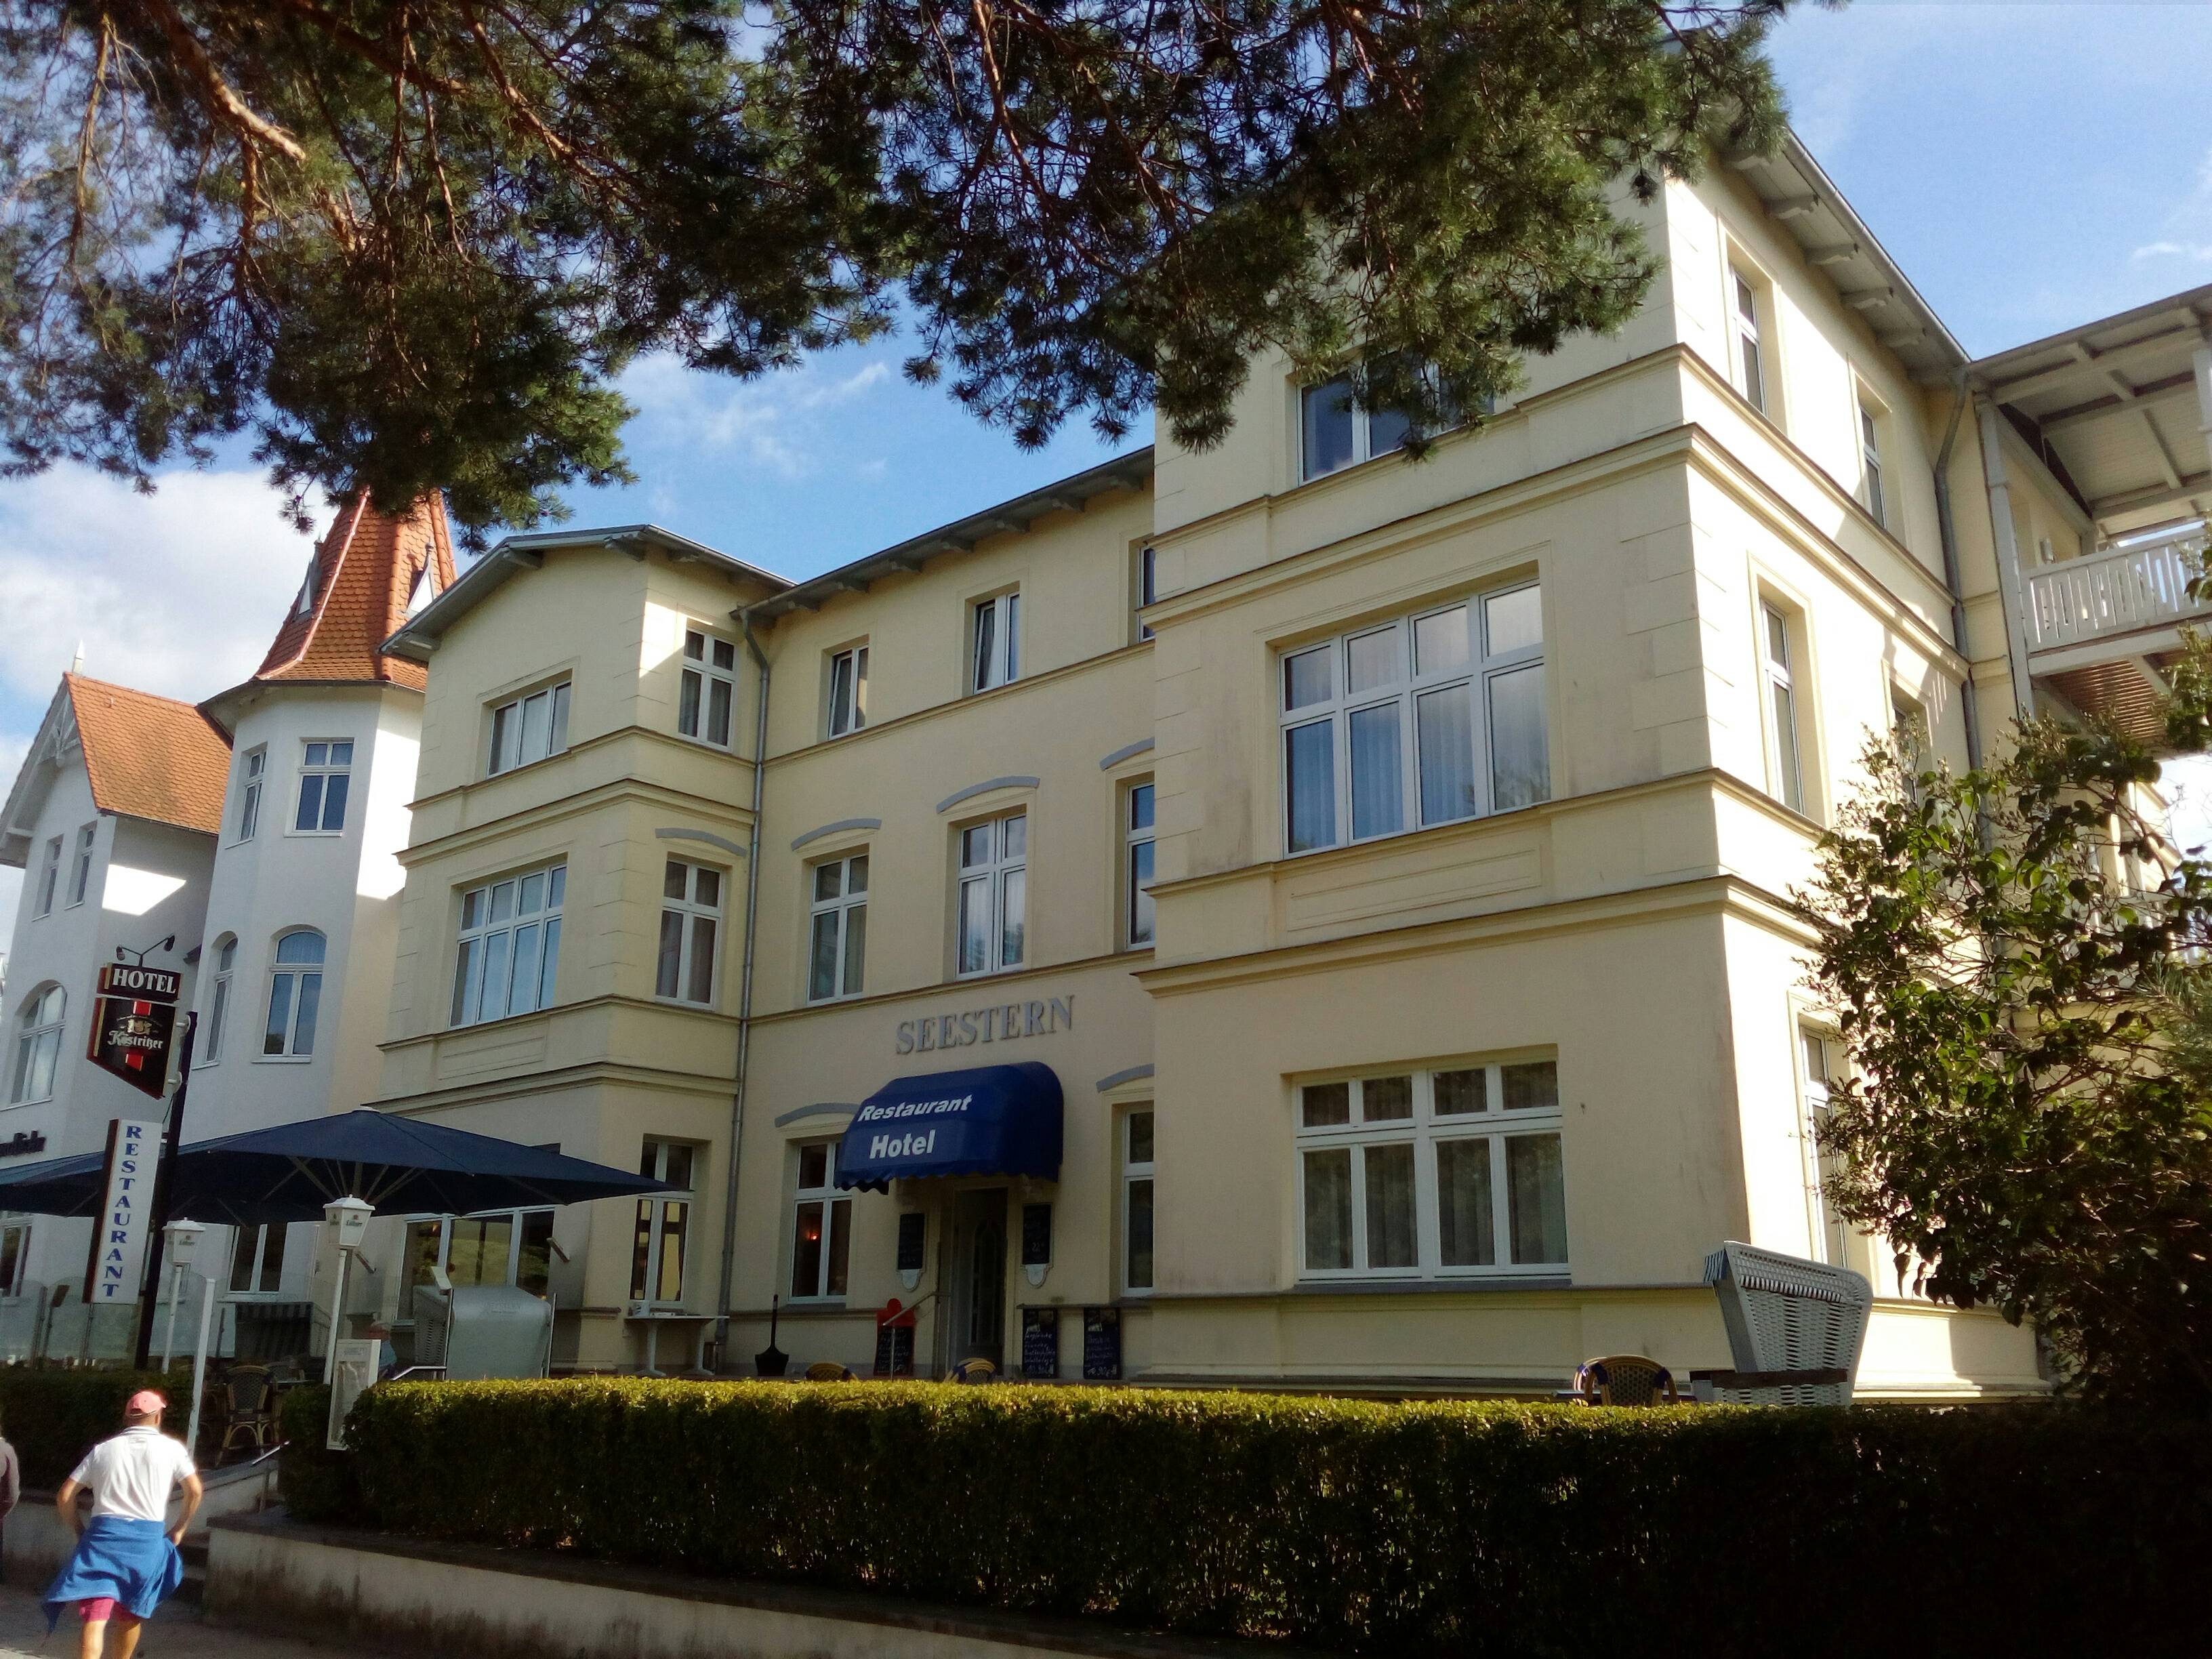 Hotel Seestern in Zinnowitz